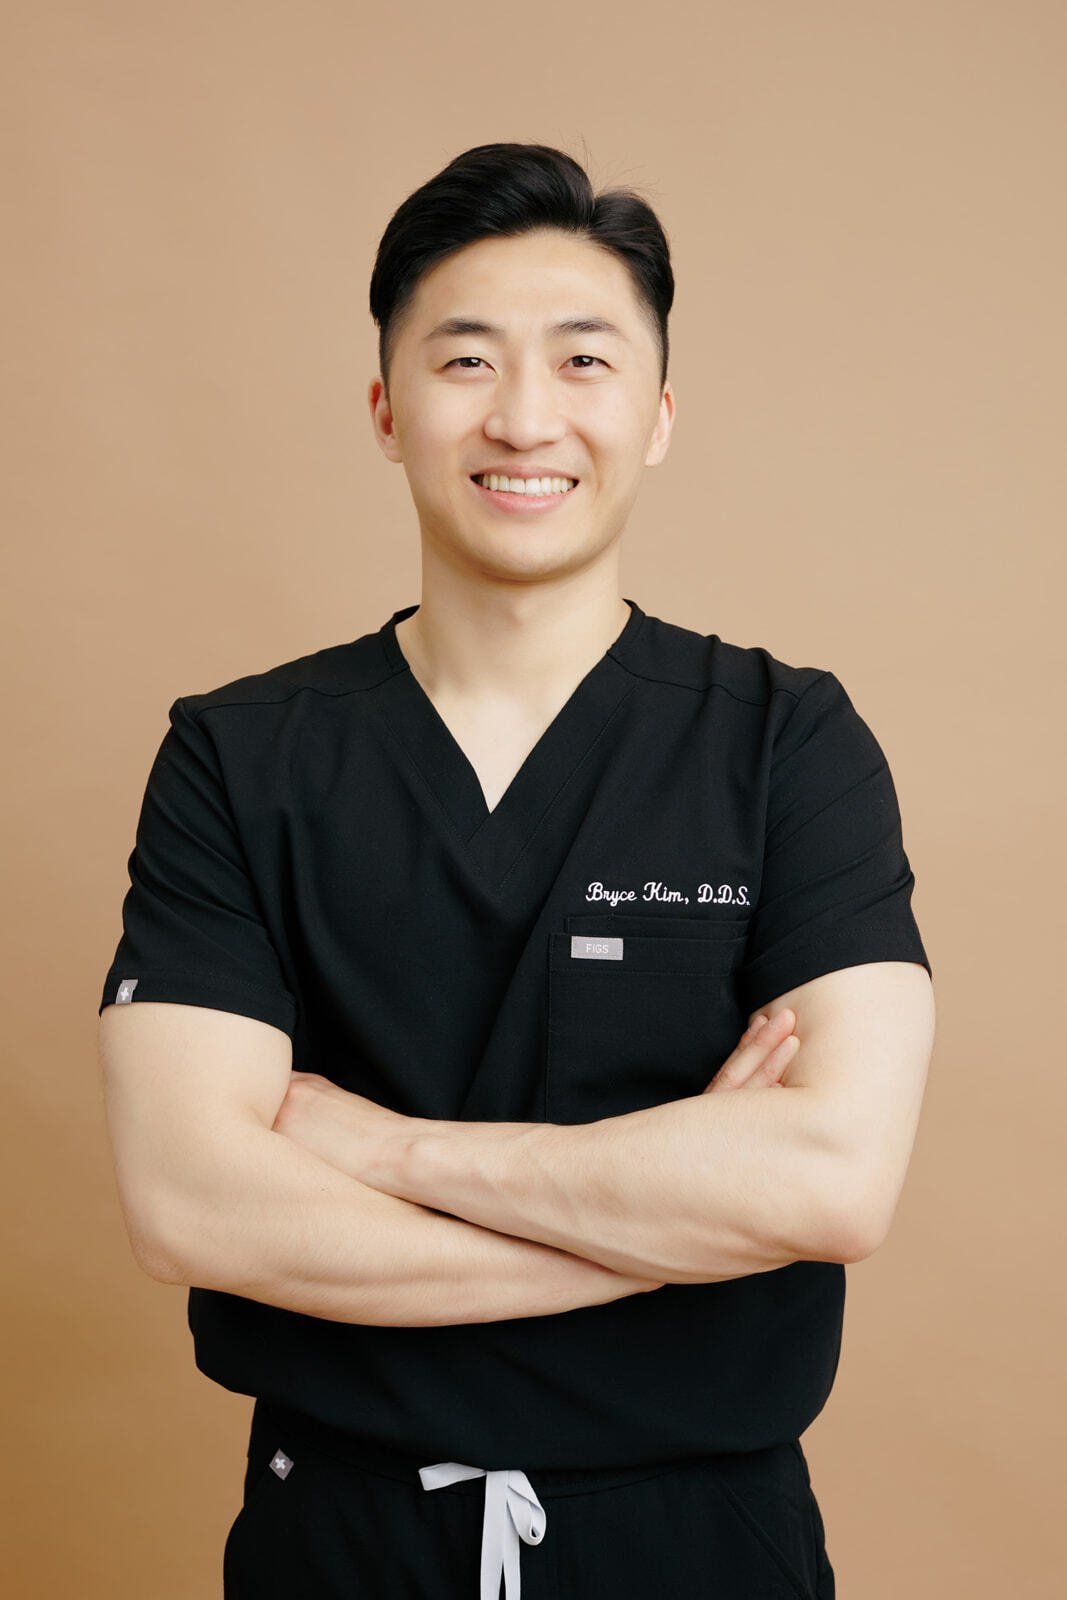 Dr. Byeongjik Kim, DDS